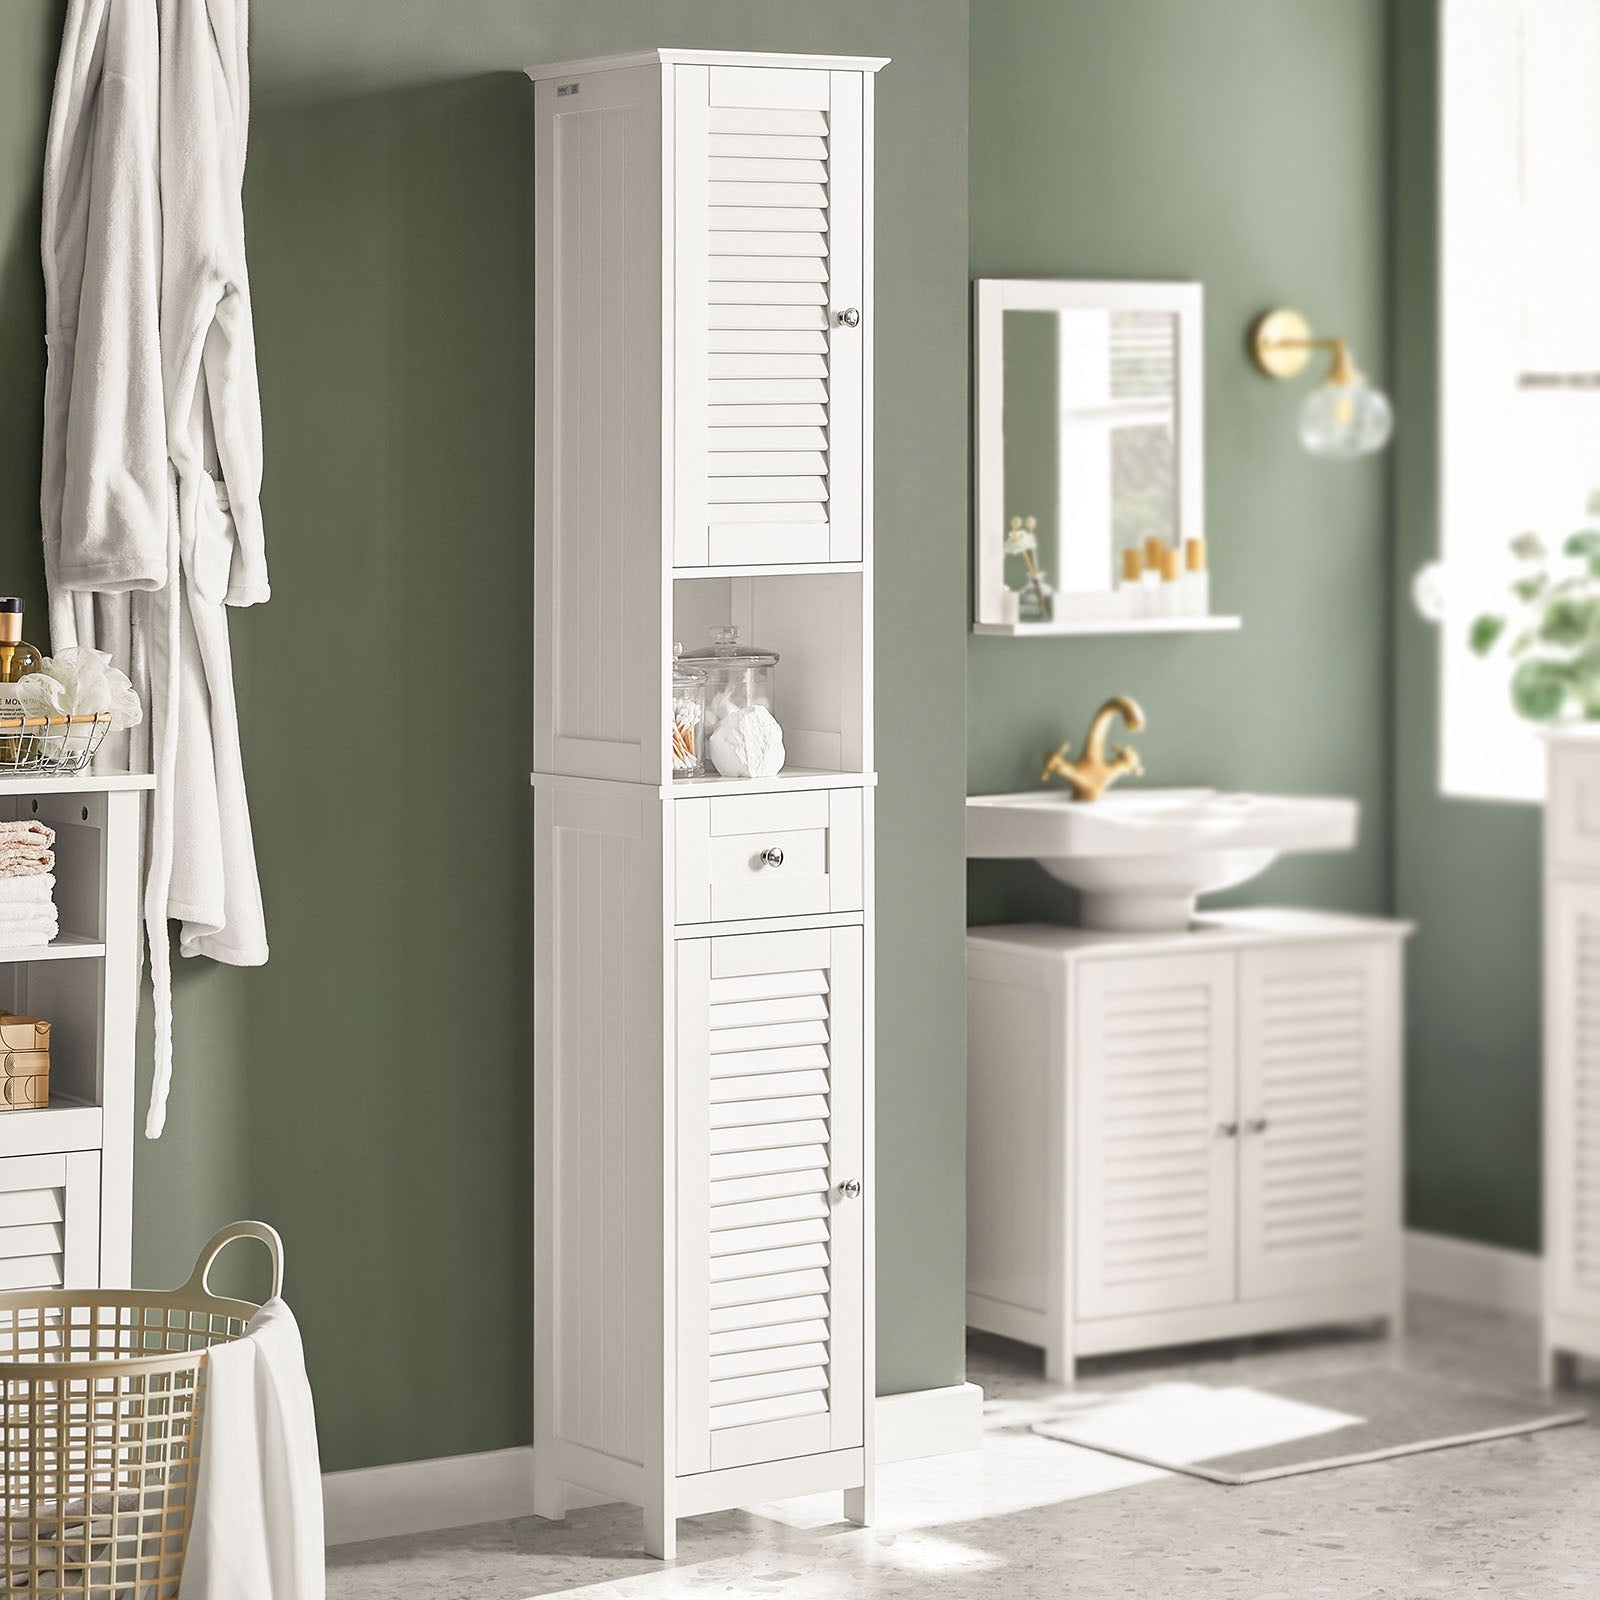 SoBuy White Free Standing Tallboy Bathroom Cabinet Storage Cupboard,FRG236-W